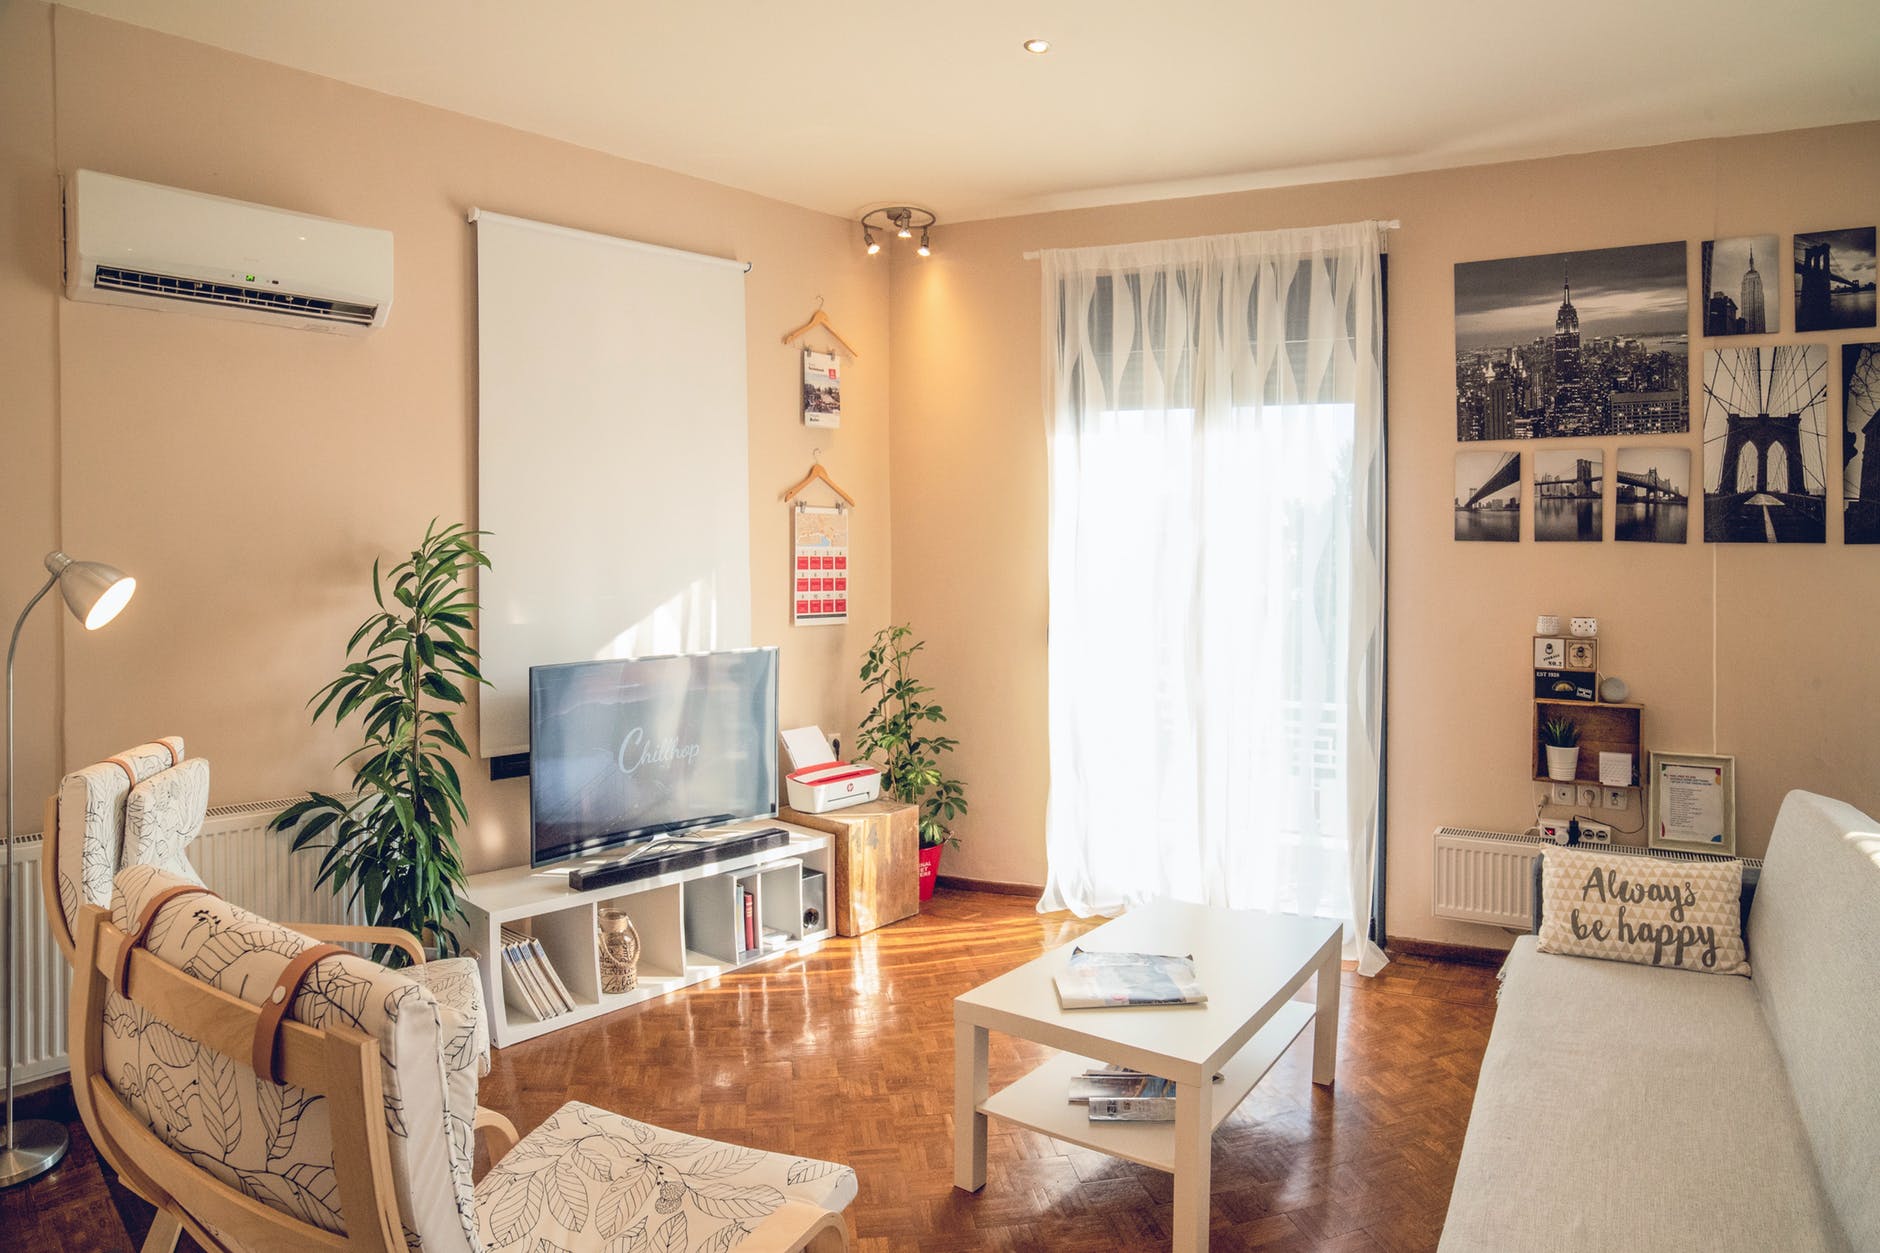 Airbnb preocupado por nueva Ley que regularía los hospedajes no tradicionales